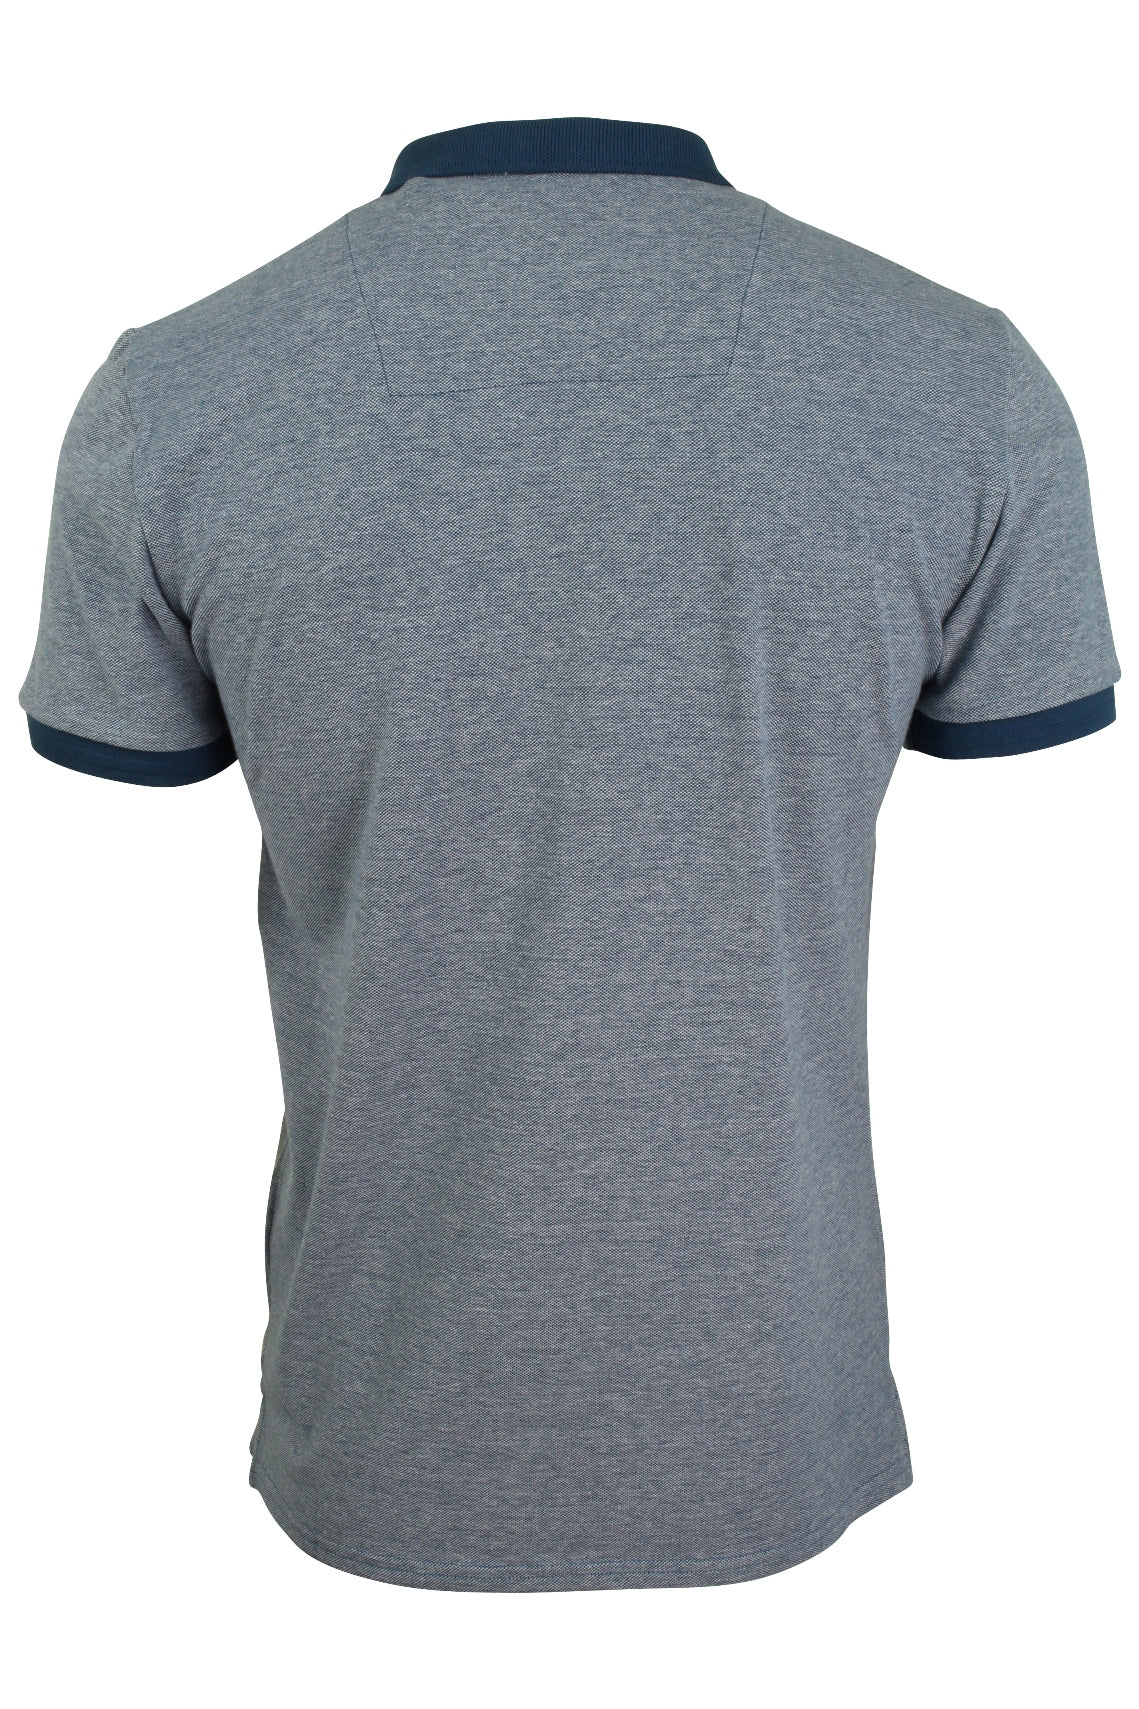 Xact Men's Birdseye Pique Polo T-Shirt Short Sleeved - 100% Cotton-3